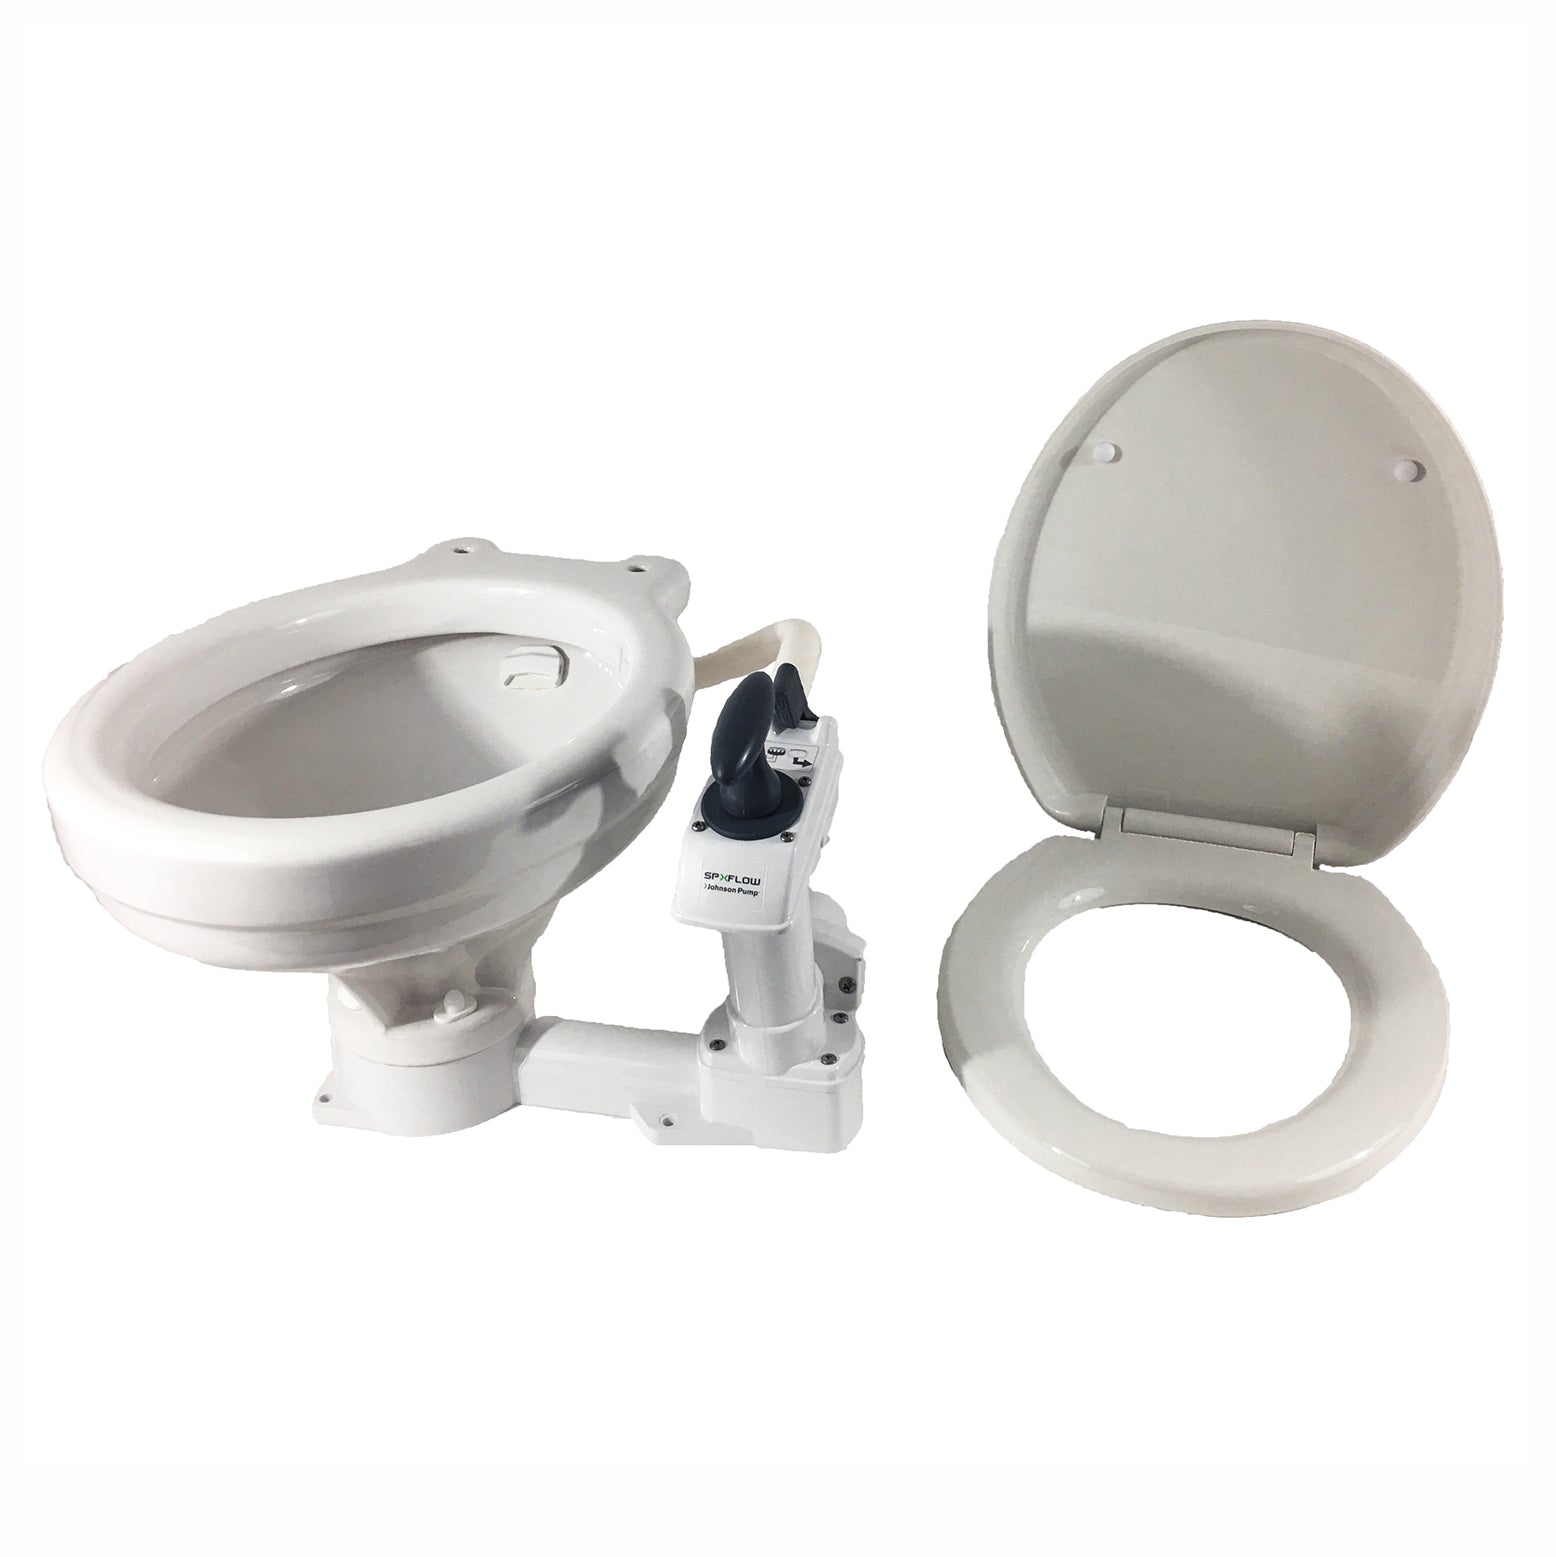 Johnson Pump 80-47230-01 AquaT Manual Comfort Toilet